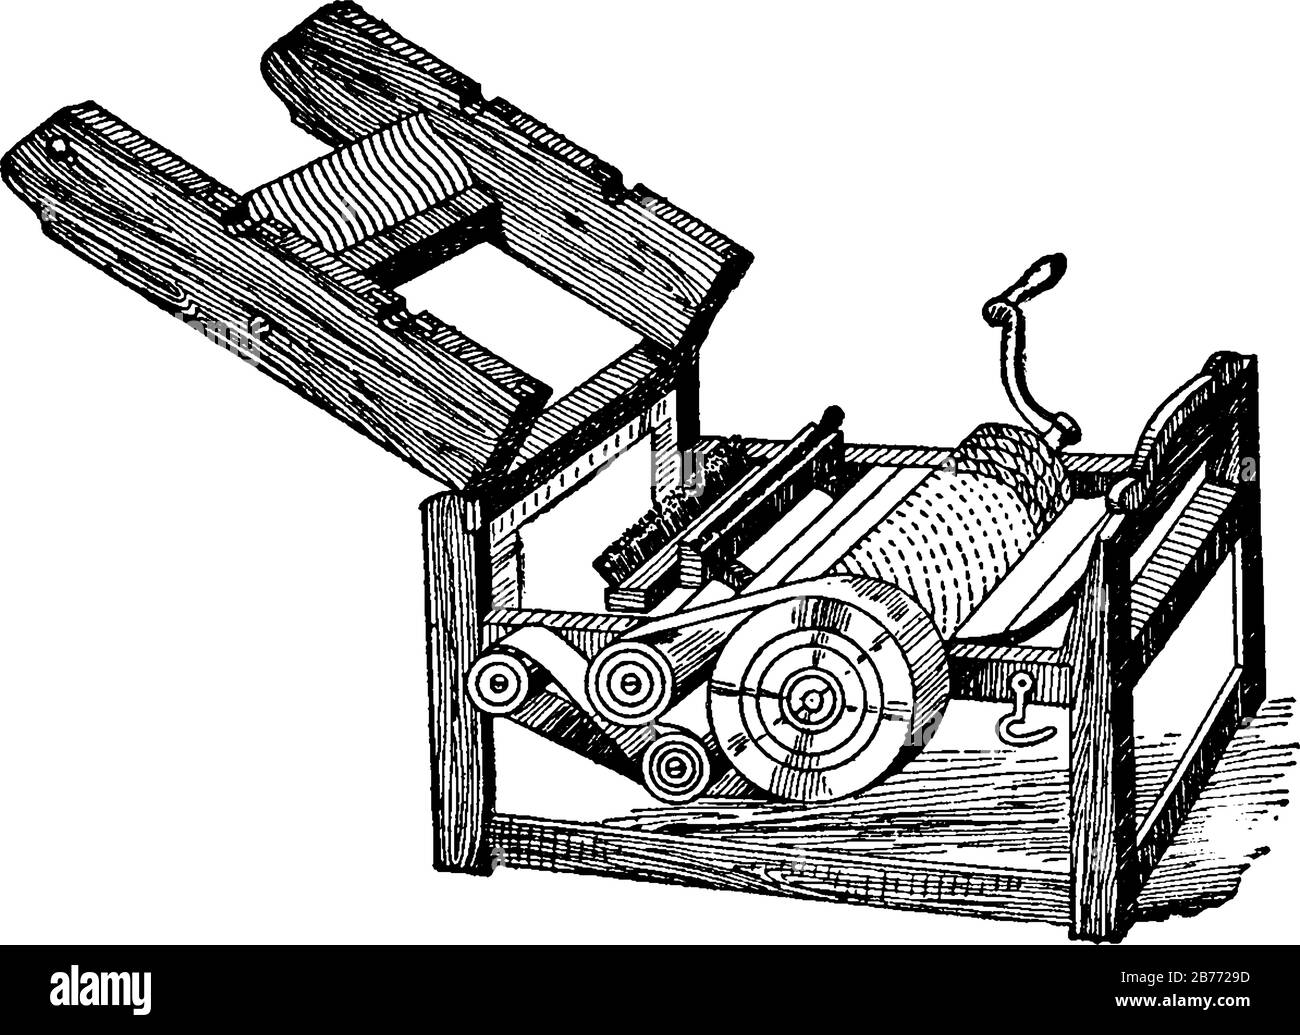 Eine von Eli Whitney Erfundene Maschine trennt die Baumwollfasern schnell von ihren Samen und ermöglicht so eine höhere Produktivität als die manuelle Baumwolltrennung. Stock Vektor